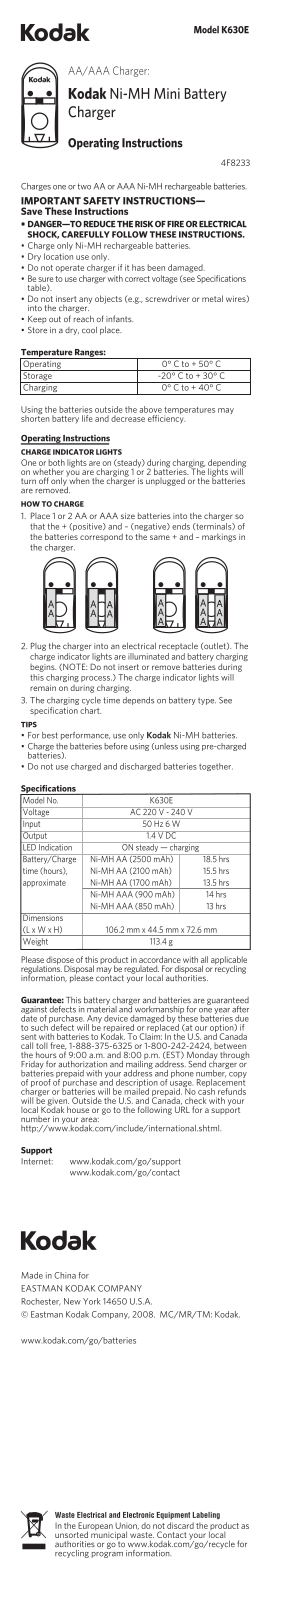 Kodak NI-MH MINI CHARGER K630E User Manual